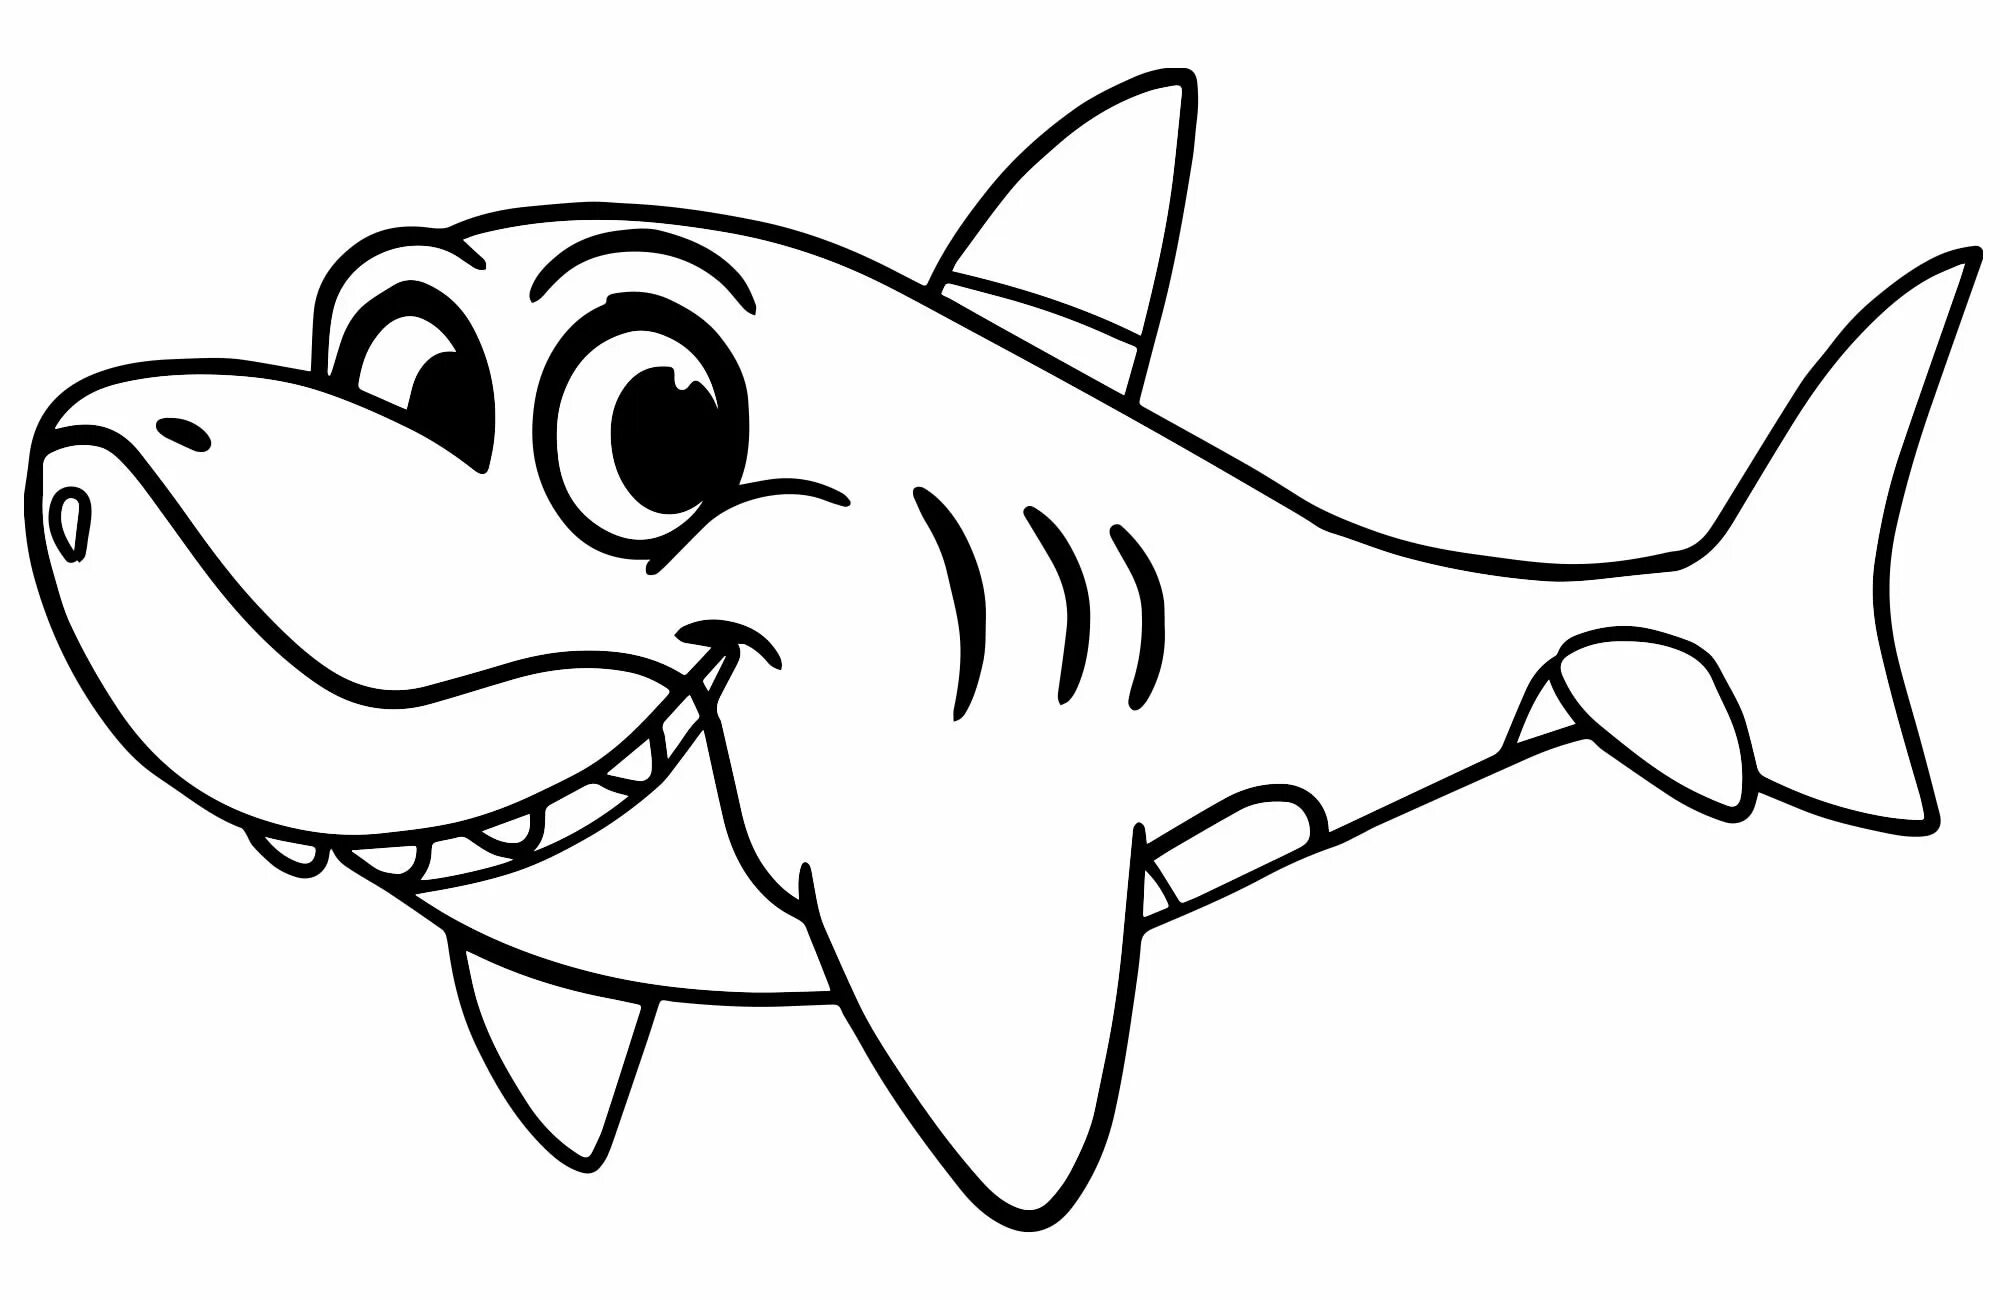 Раскраски акула. Беби Шарк. Акула раскраска. Акула раскраска для детей. Акула рисунок.